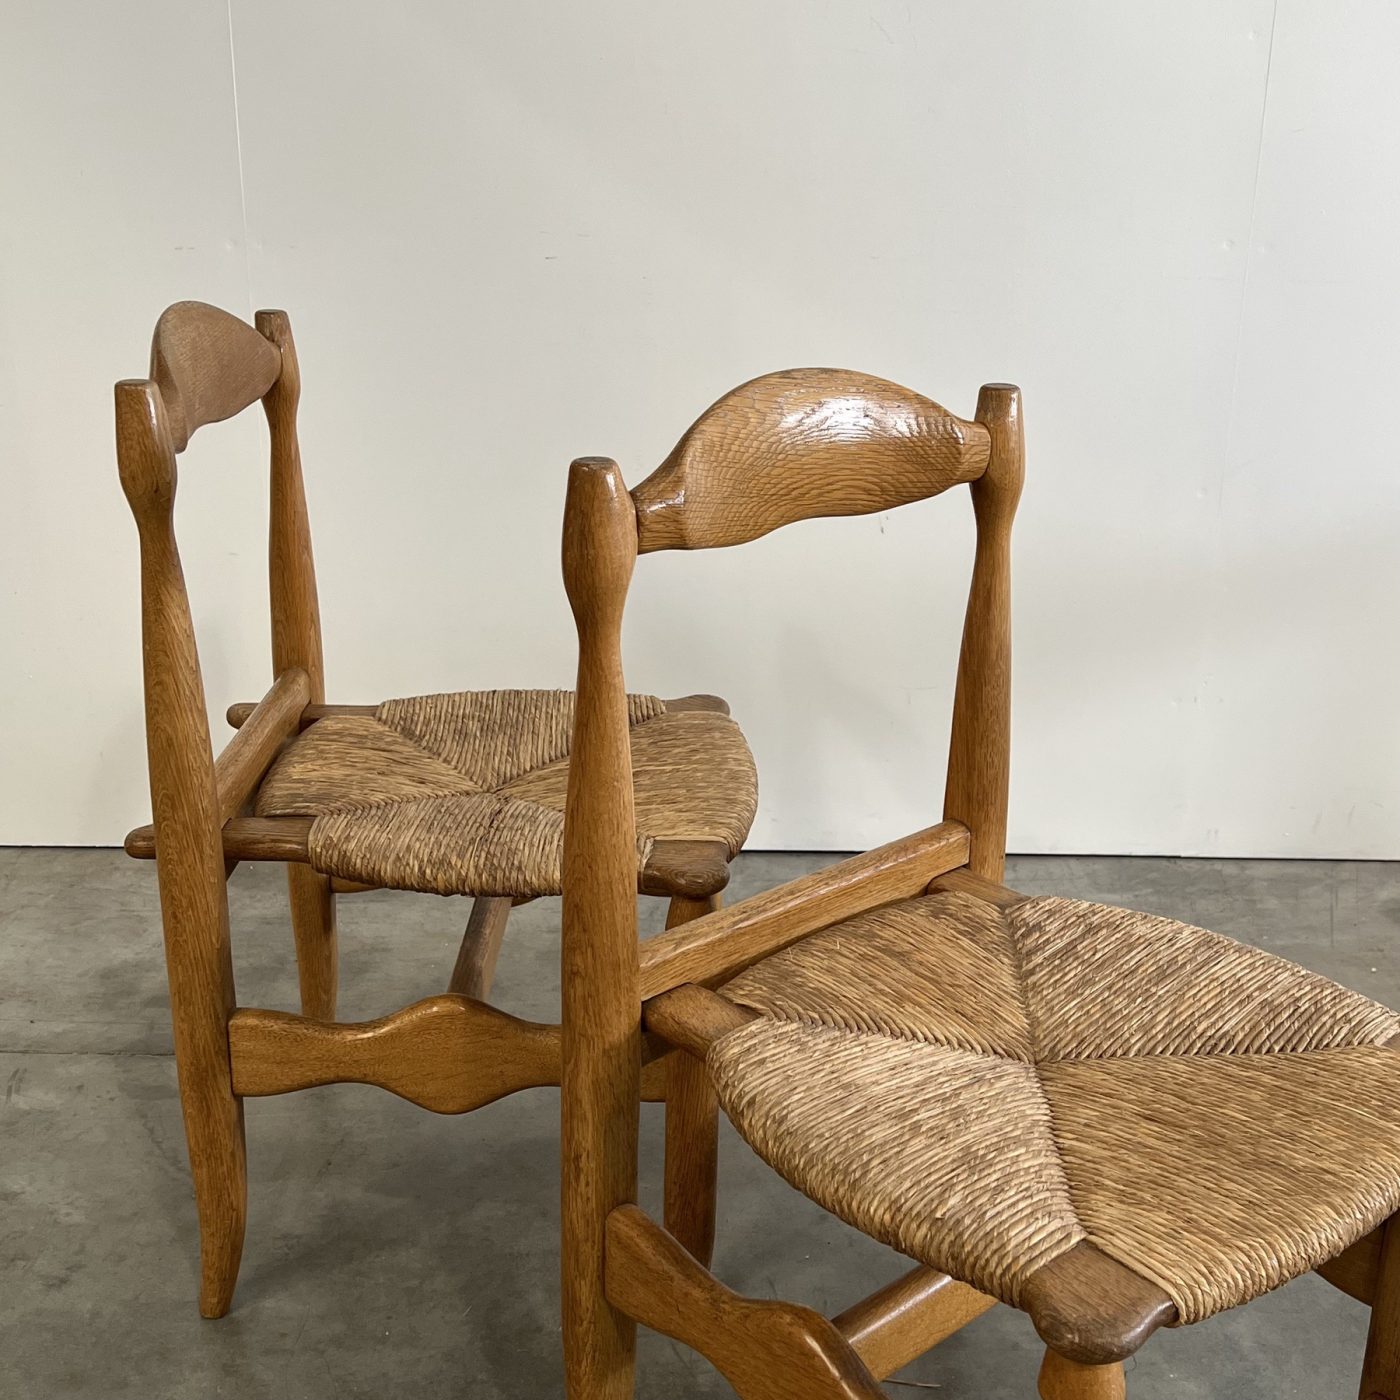 objet-vagabond-guillerme-chairs0001